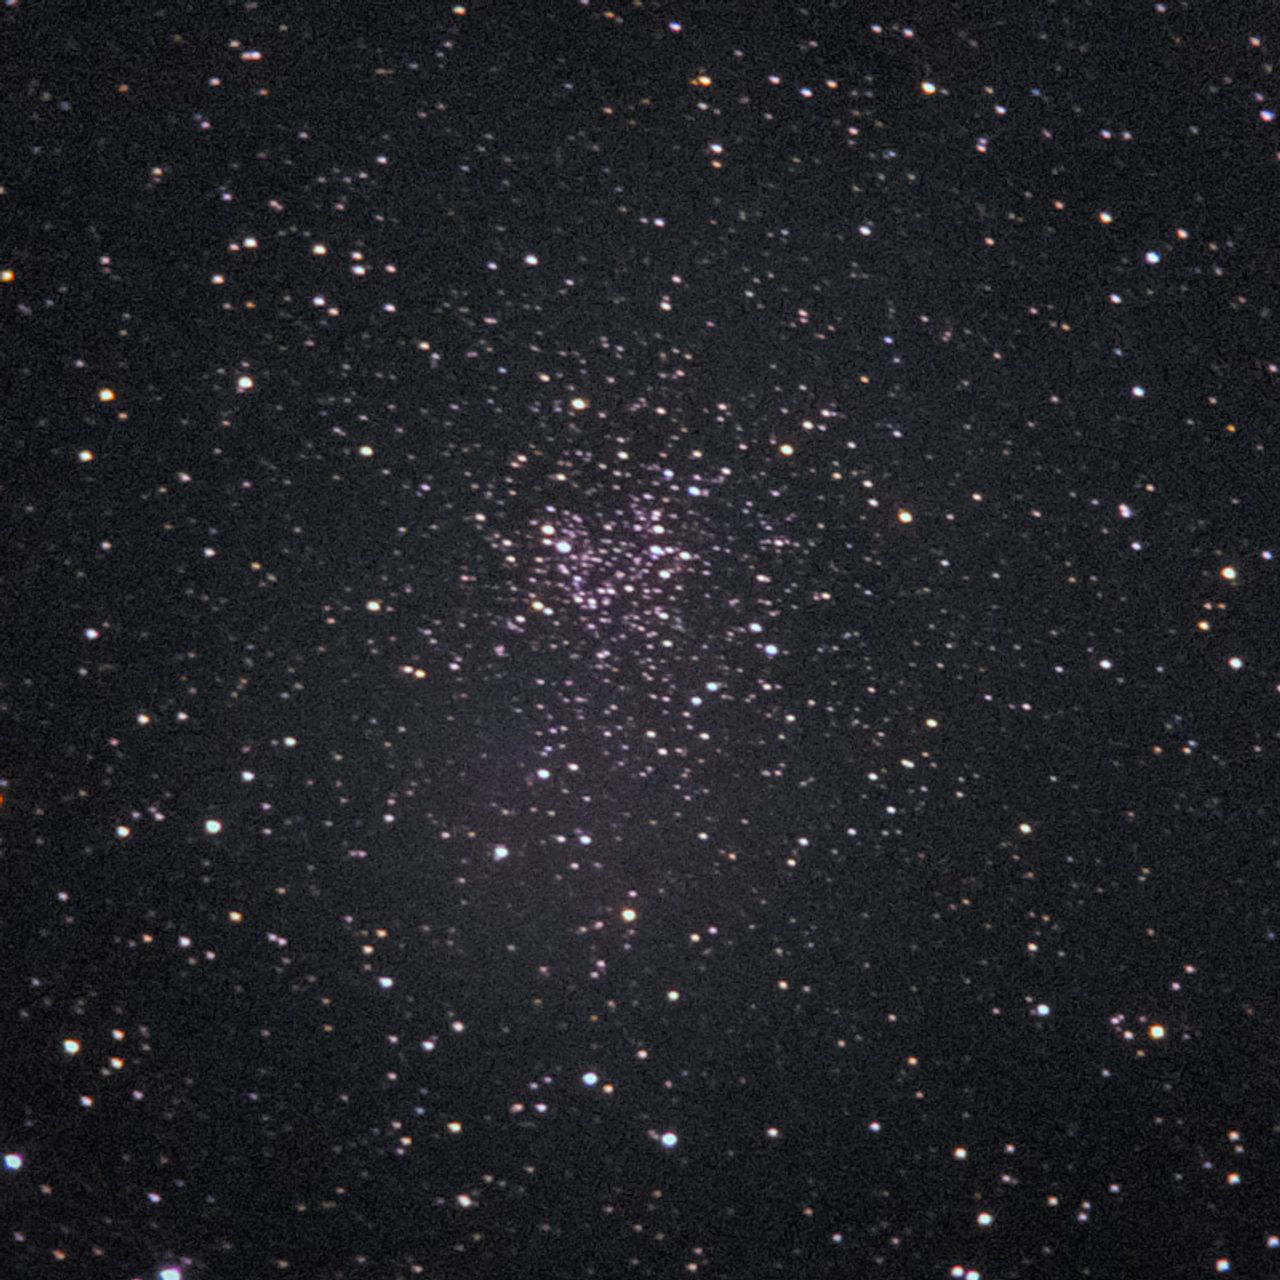 NGC2506